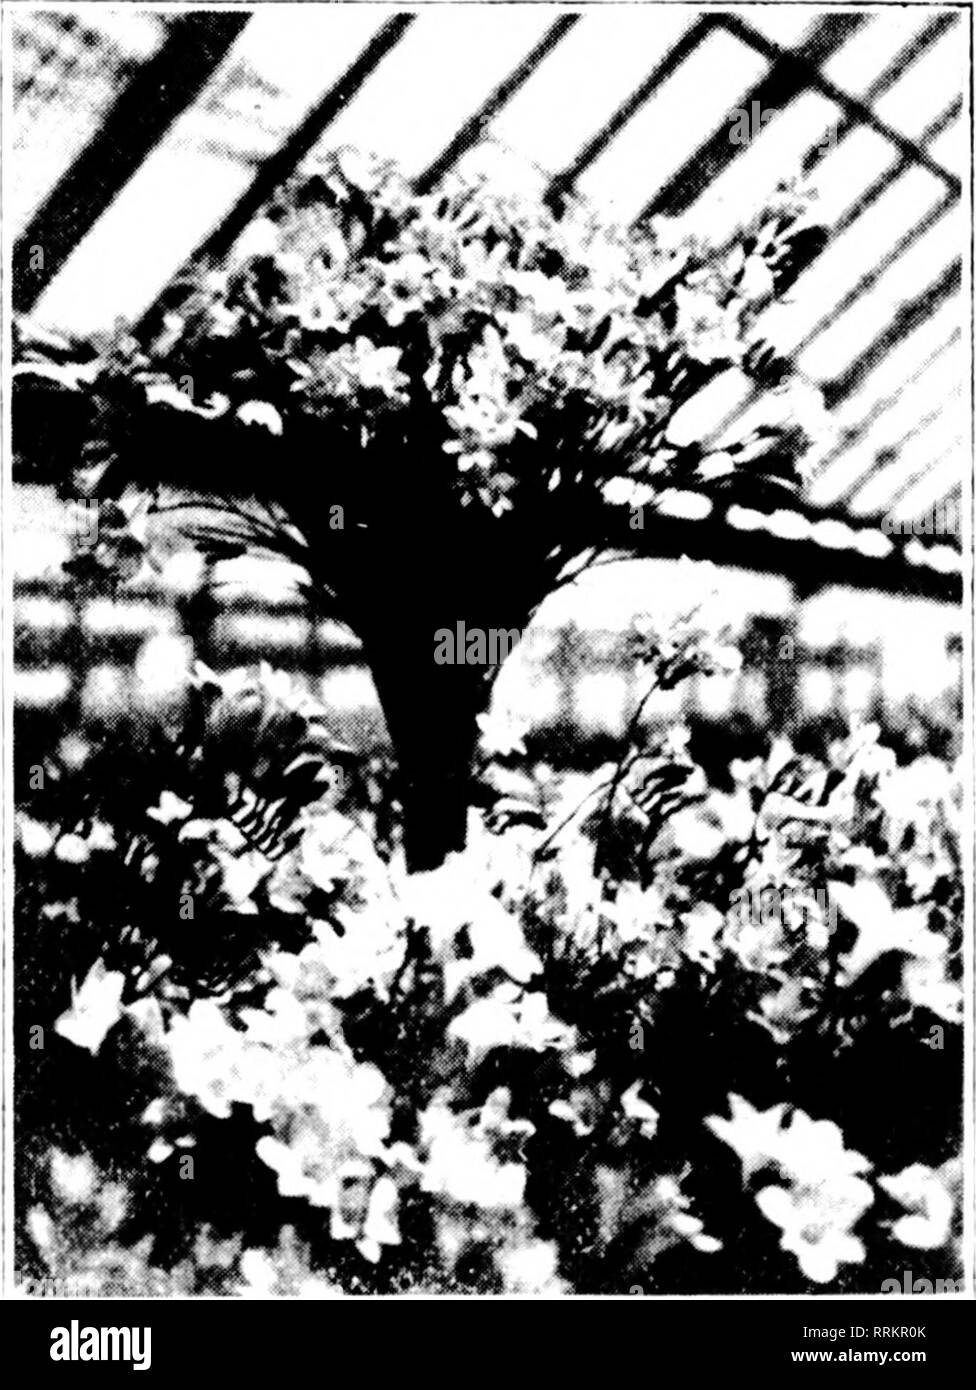 . Floristen Review [microform]. Blumenzucht. 16 Die Floristen^ Review JiNi; 14, 1917 DER HAGEL MAUT in Maryland. Haarlekin. Tlic? schlimmste liail sixtt stmiii in 'Ich' ii ycnrs Struck llu 'cstiildisliiiK' nl nl' ('l&gt;liaih. Wrj^leuchtet in Jxi 'istiTstdWU, NM.. bei 1&gt;. 111.,. linu '&lt; Ich. Ich': Ai-t'h-a 11 alle Tlic^ lass Öl tlic Norden siilf Ol' lii^t'." - Ich'oot lief^ Ich 'Ich' war, ilcst roycil thrci whili', '(luiir-ters auf thr Südseite wurde unterbrochen oder dania^-cd. 'I'lu -; Rovinj, "stoek außerhalb war auch dostroyi würde. Herr AVri&lt; i; der iit jifoiiics waren in voller croji aii &Lt;l Avere gemäht, die t Stockfoto